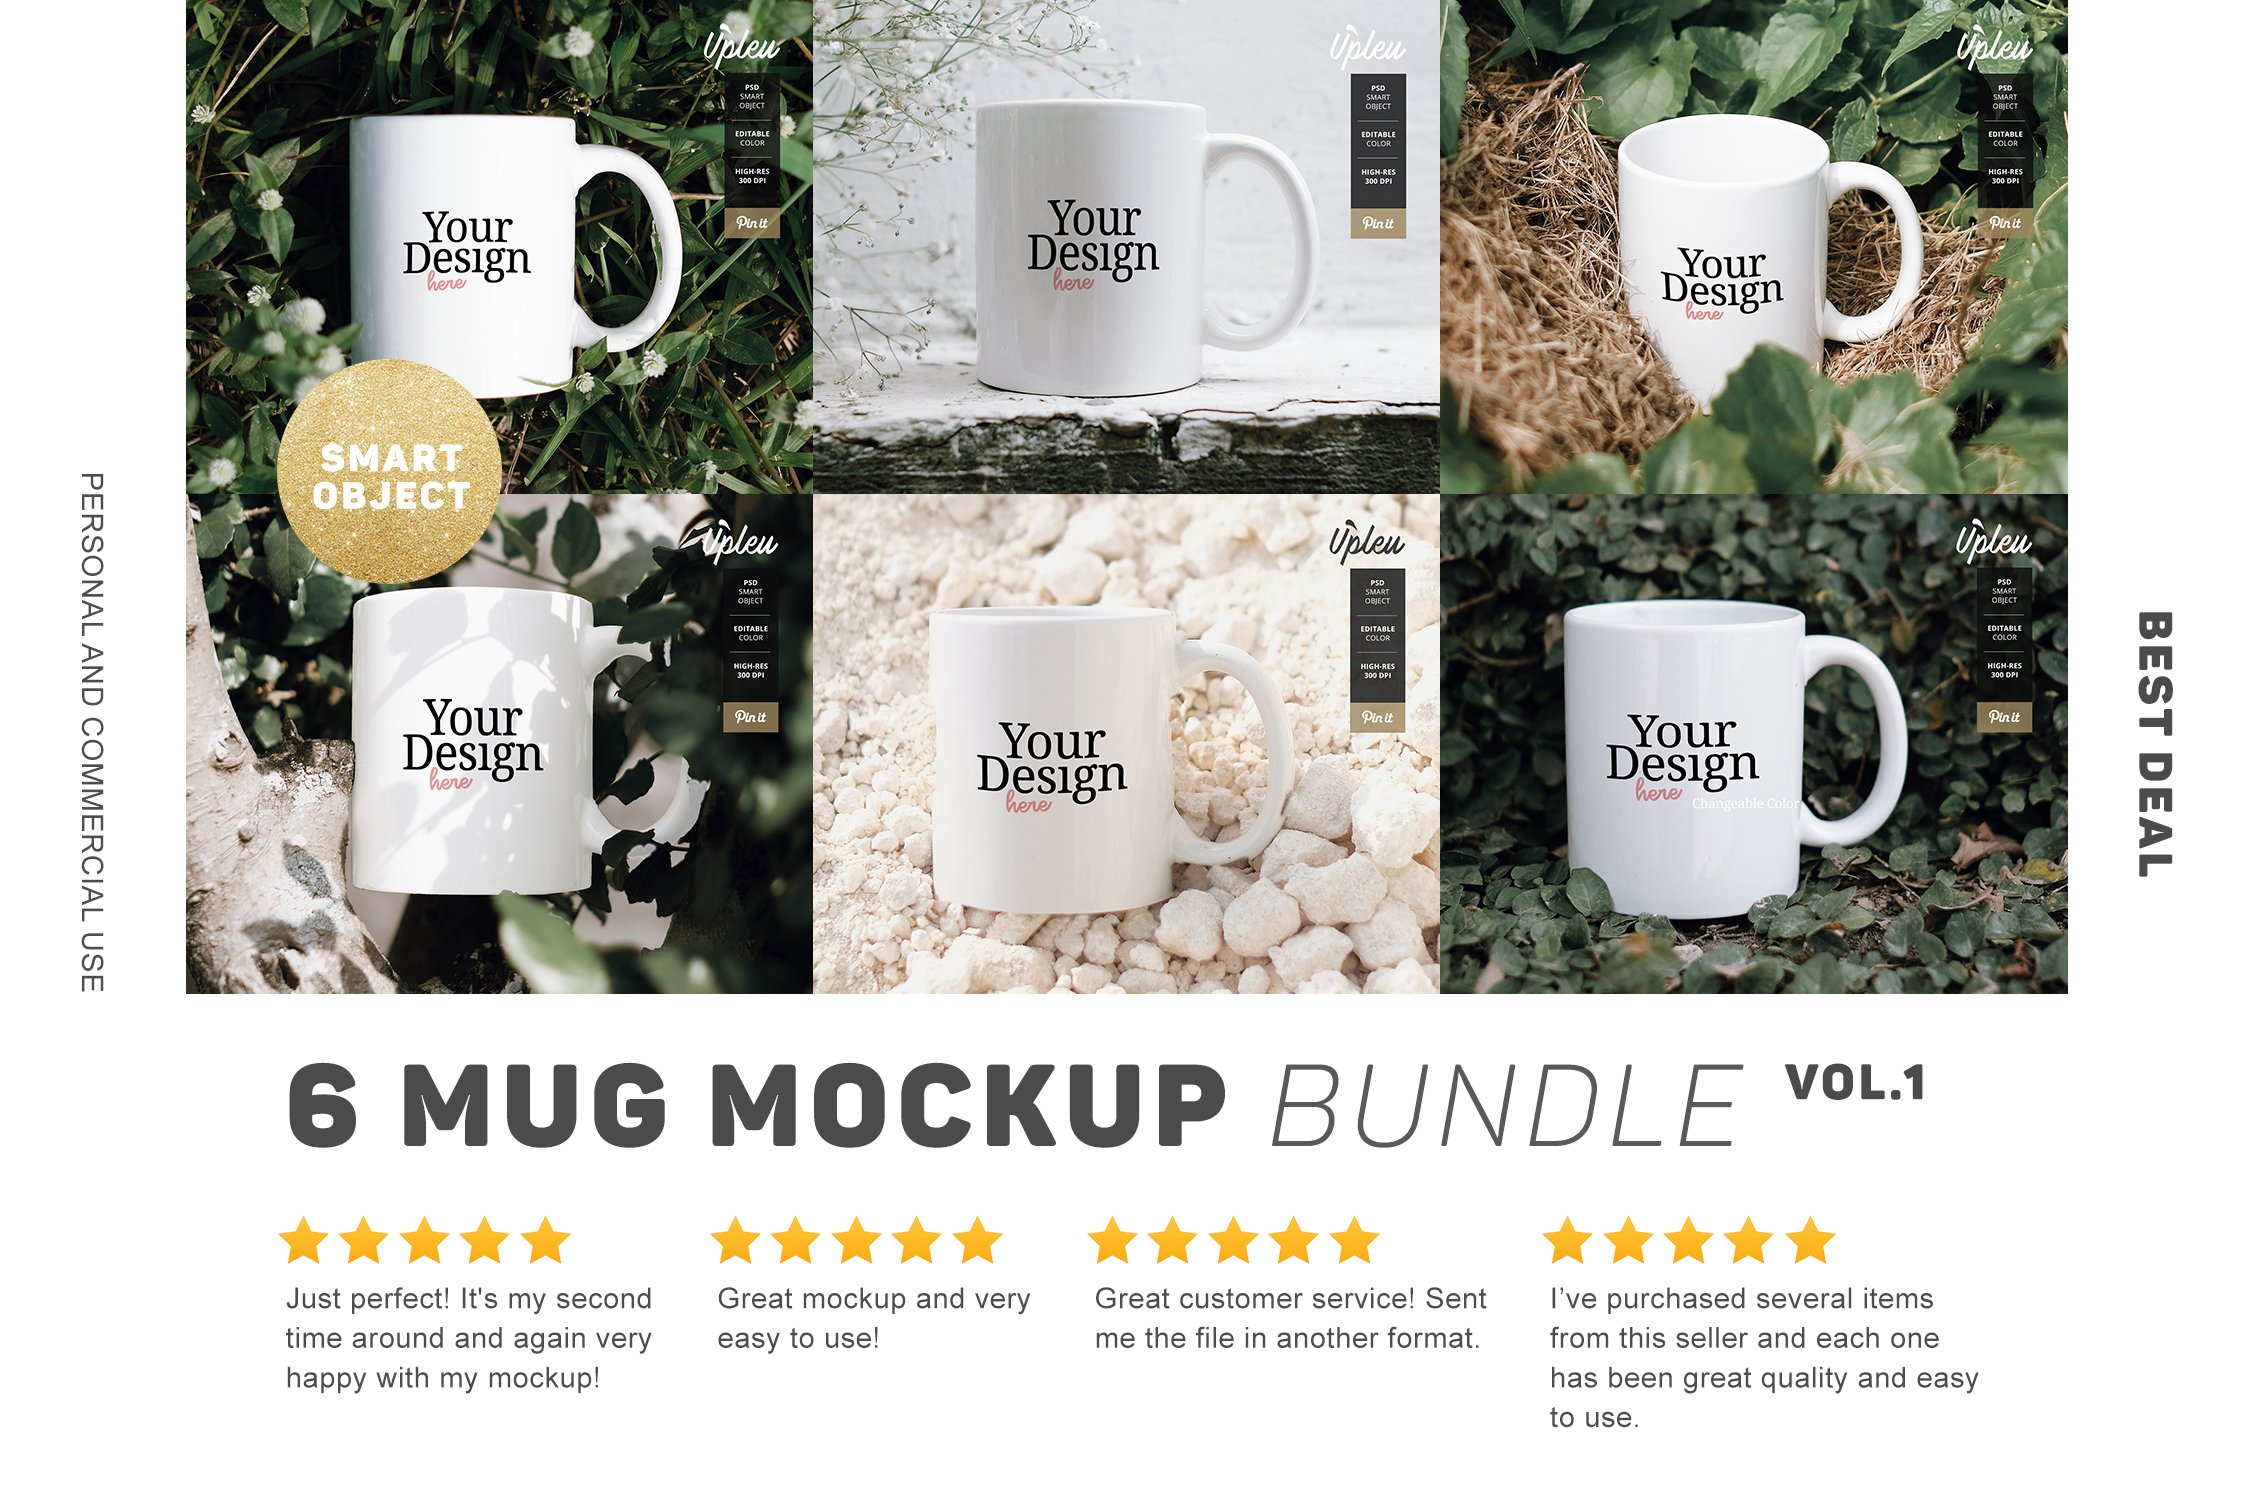 Mug Mock Up Bundle 1 cover image.